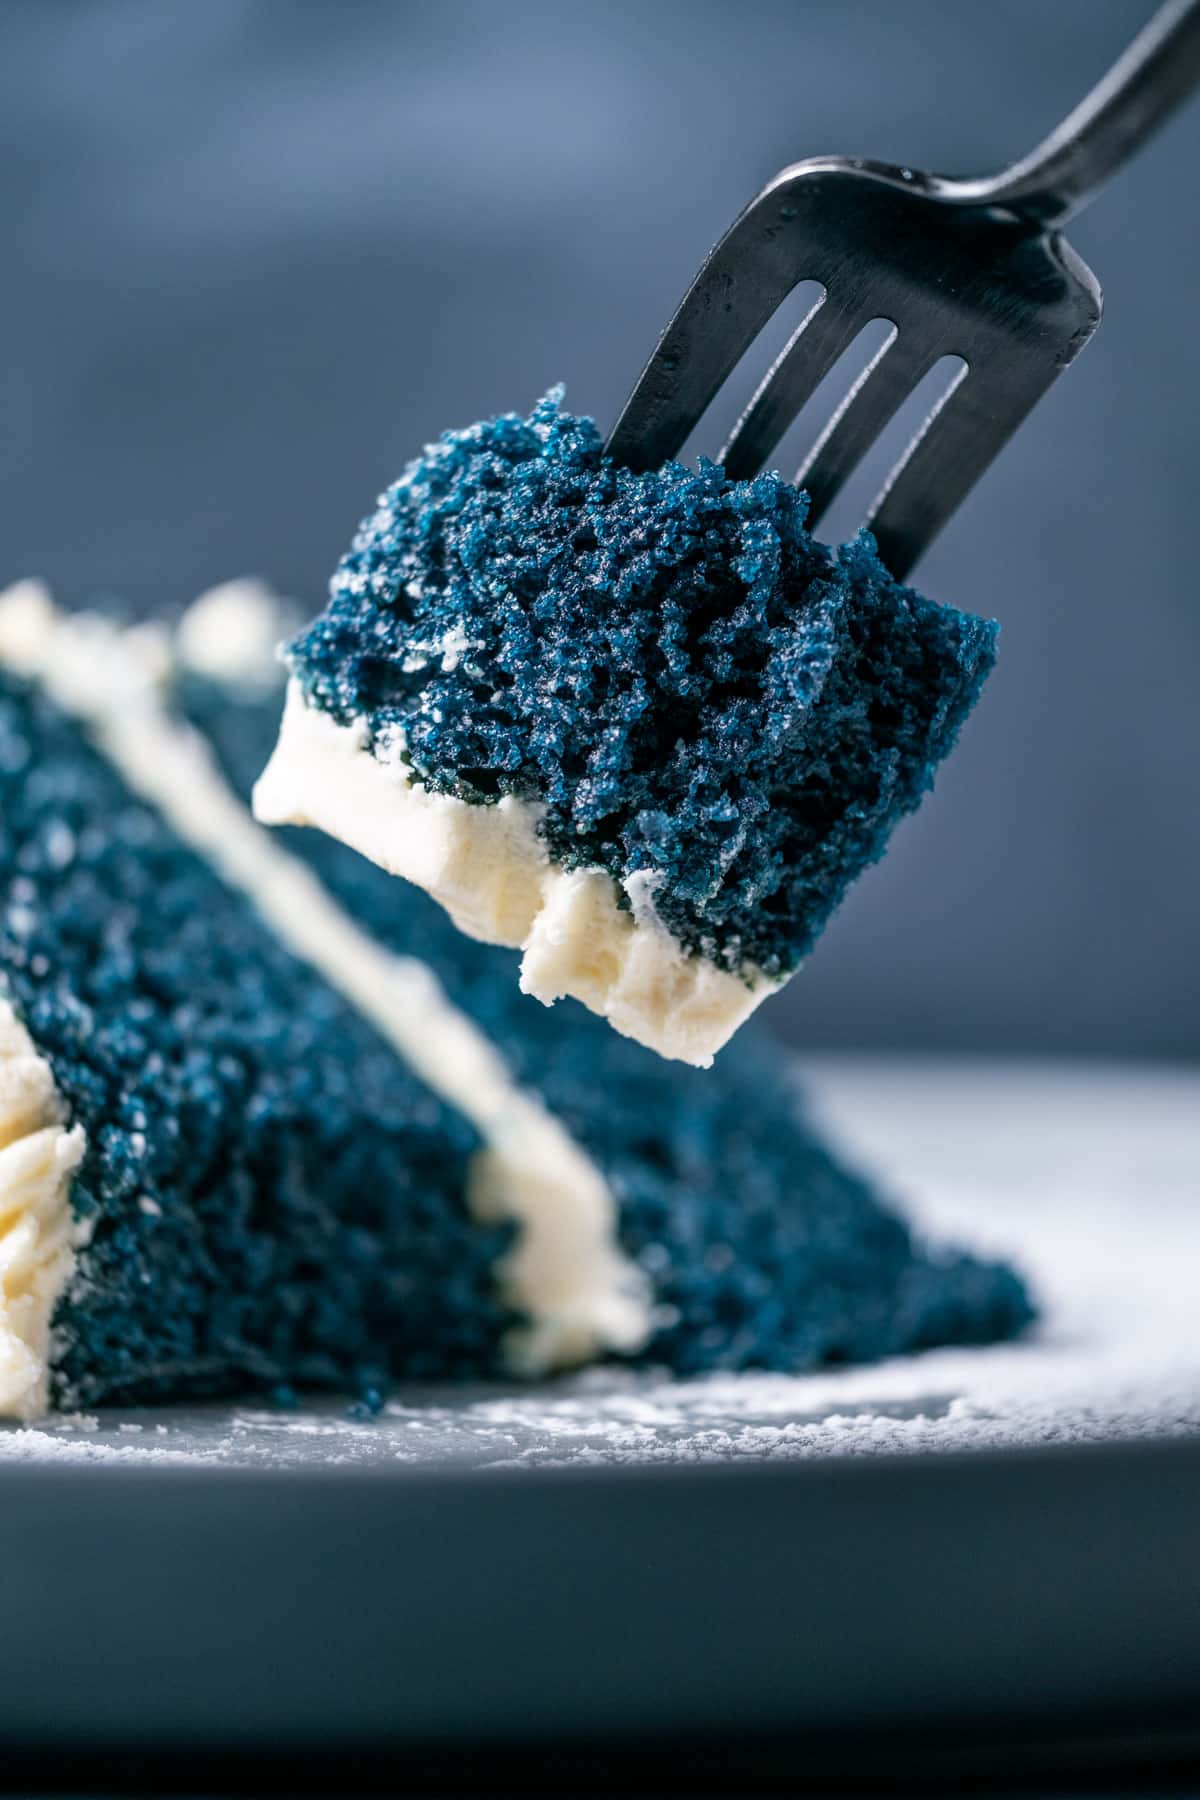 Forkful of blue velvet cake.